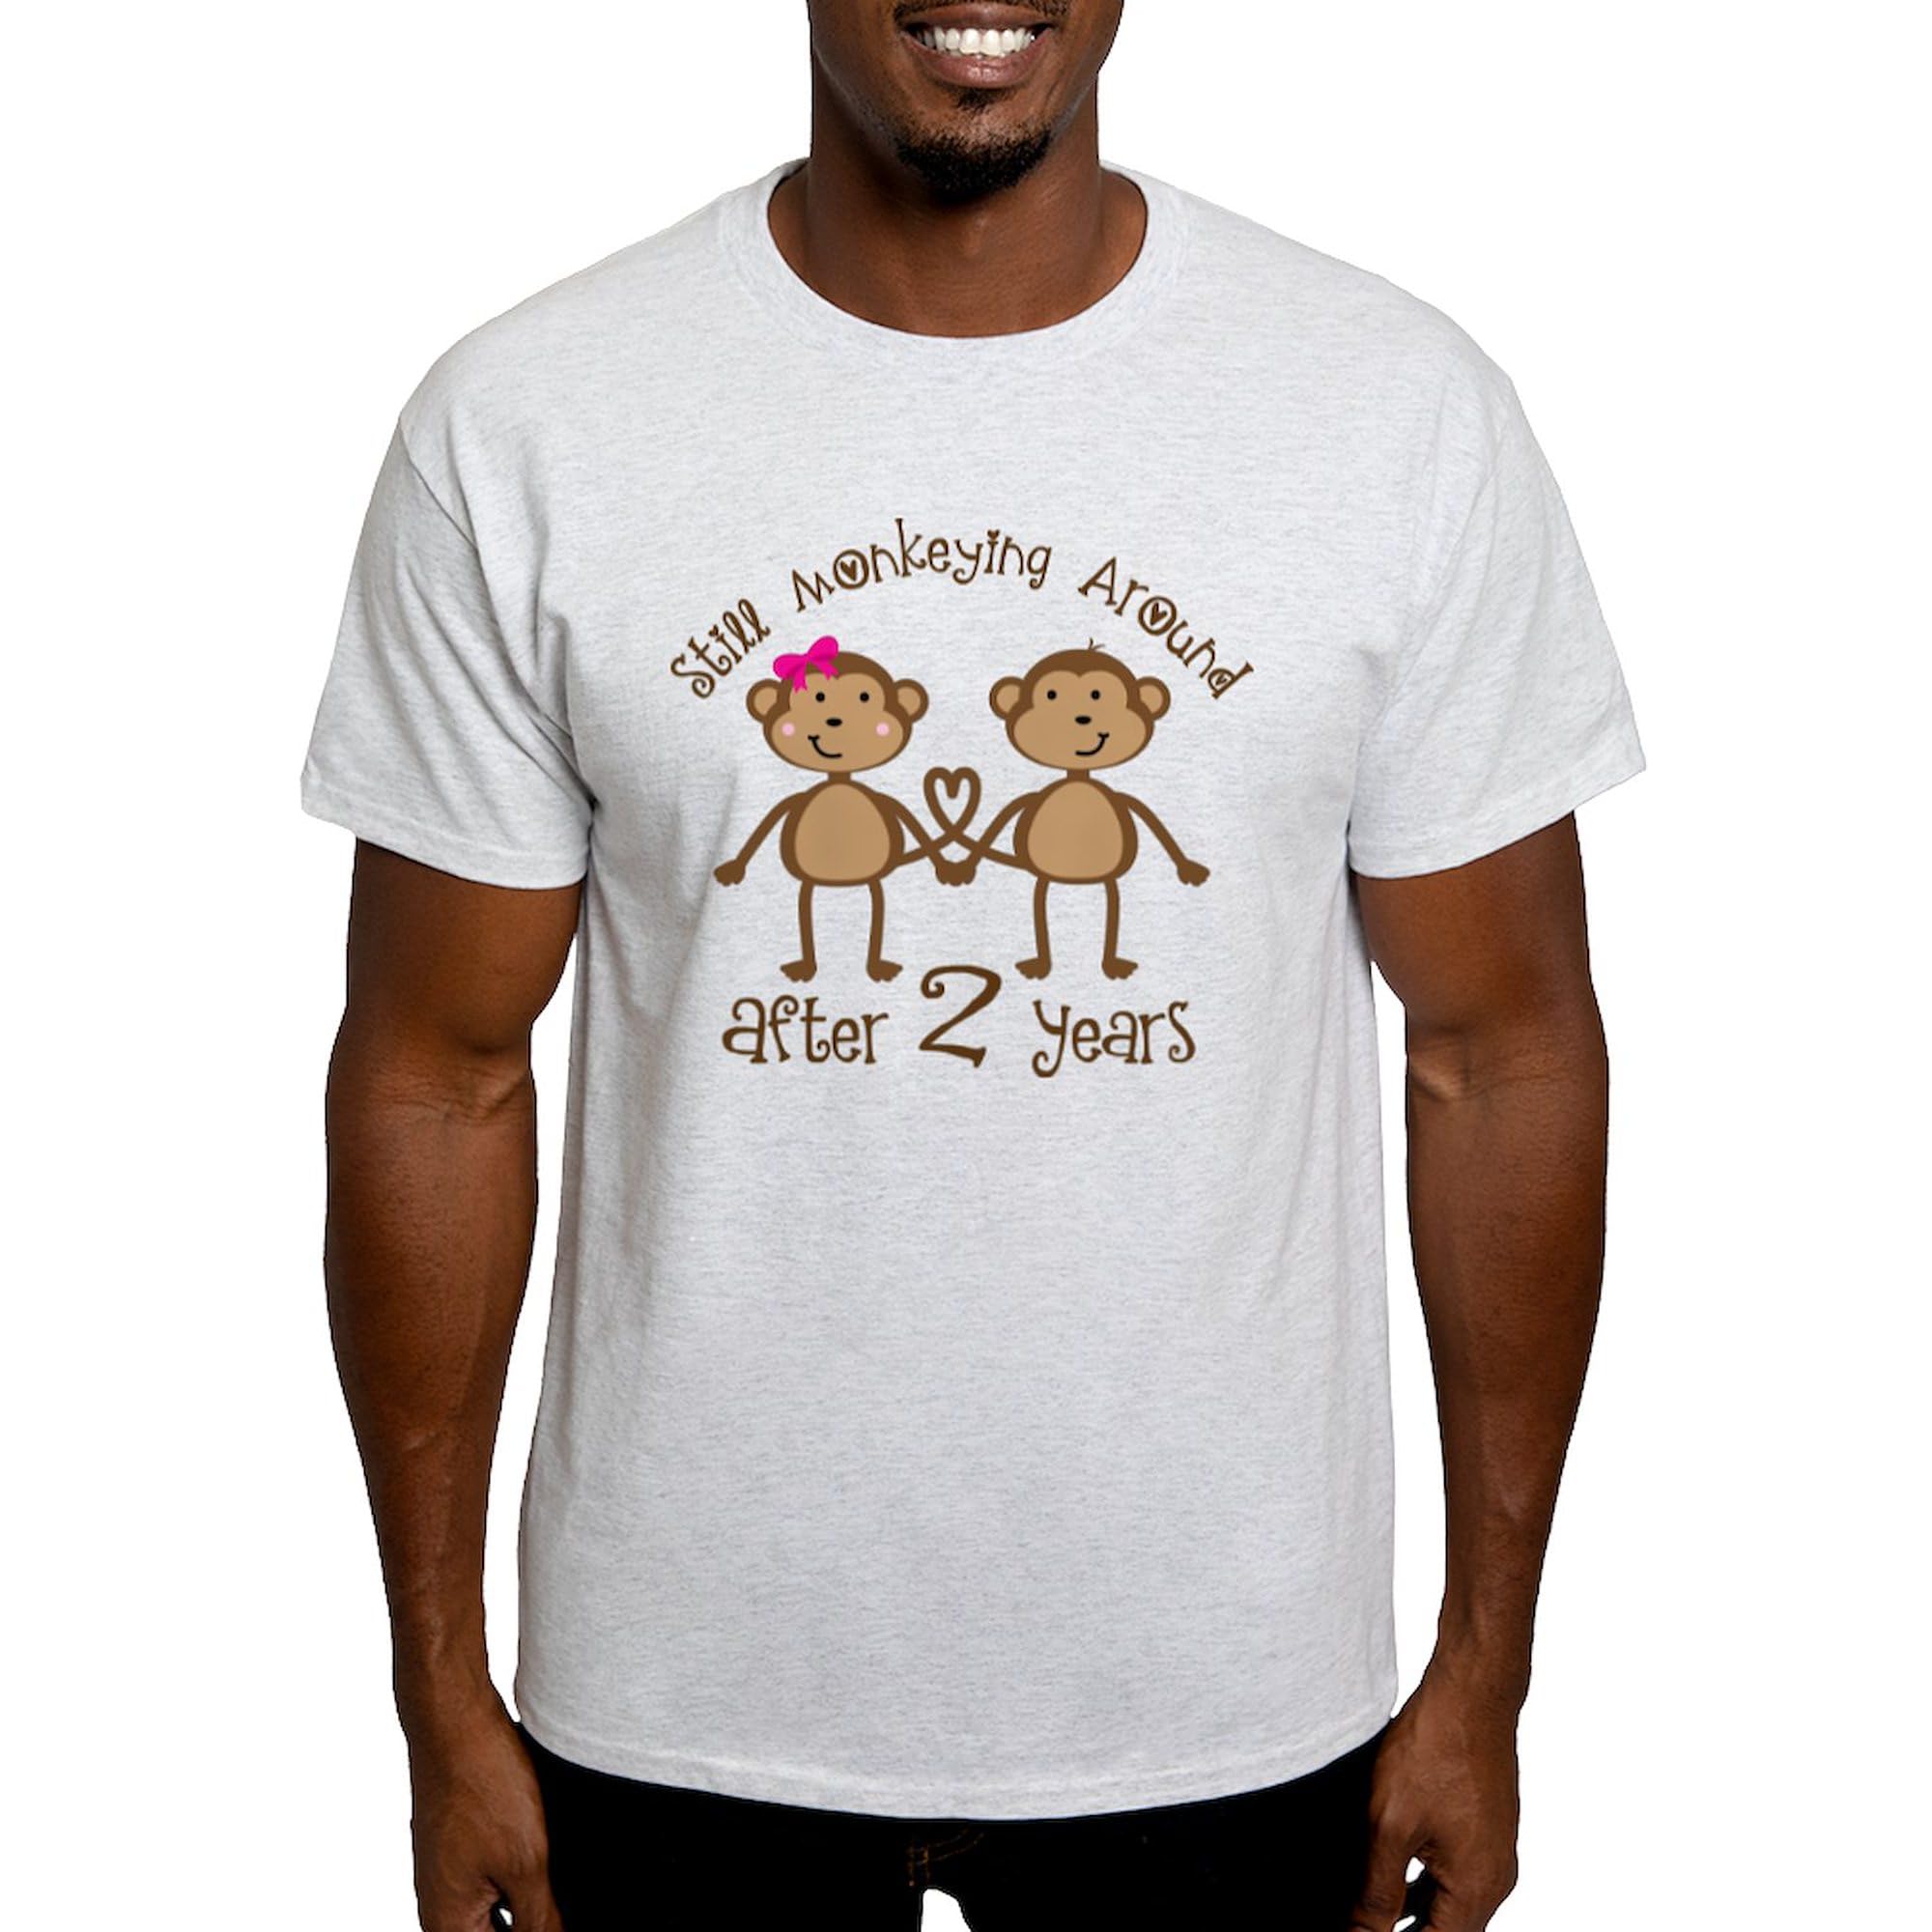 Classique CafePress T-shirt en coton Motif singes F1Xzw3rqL à vendre